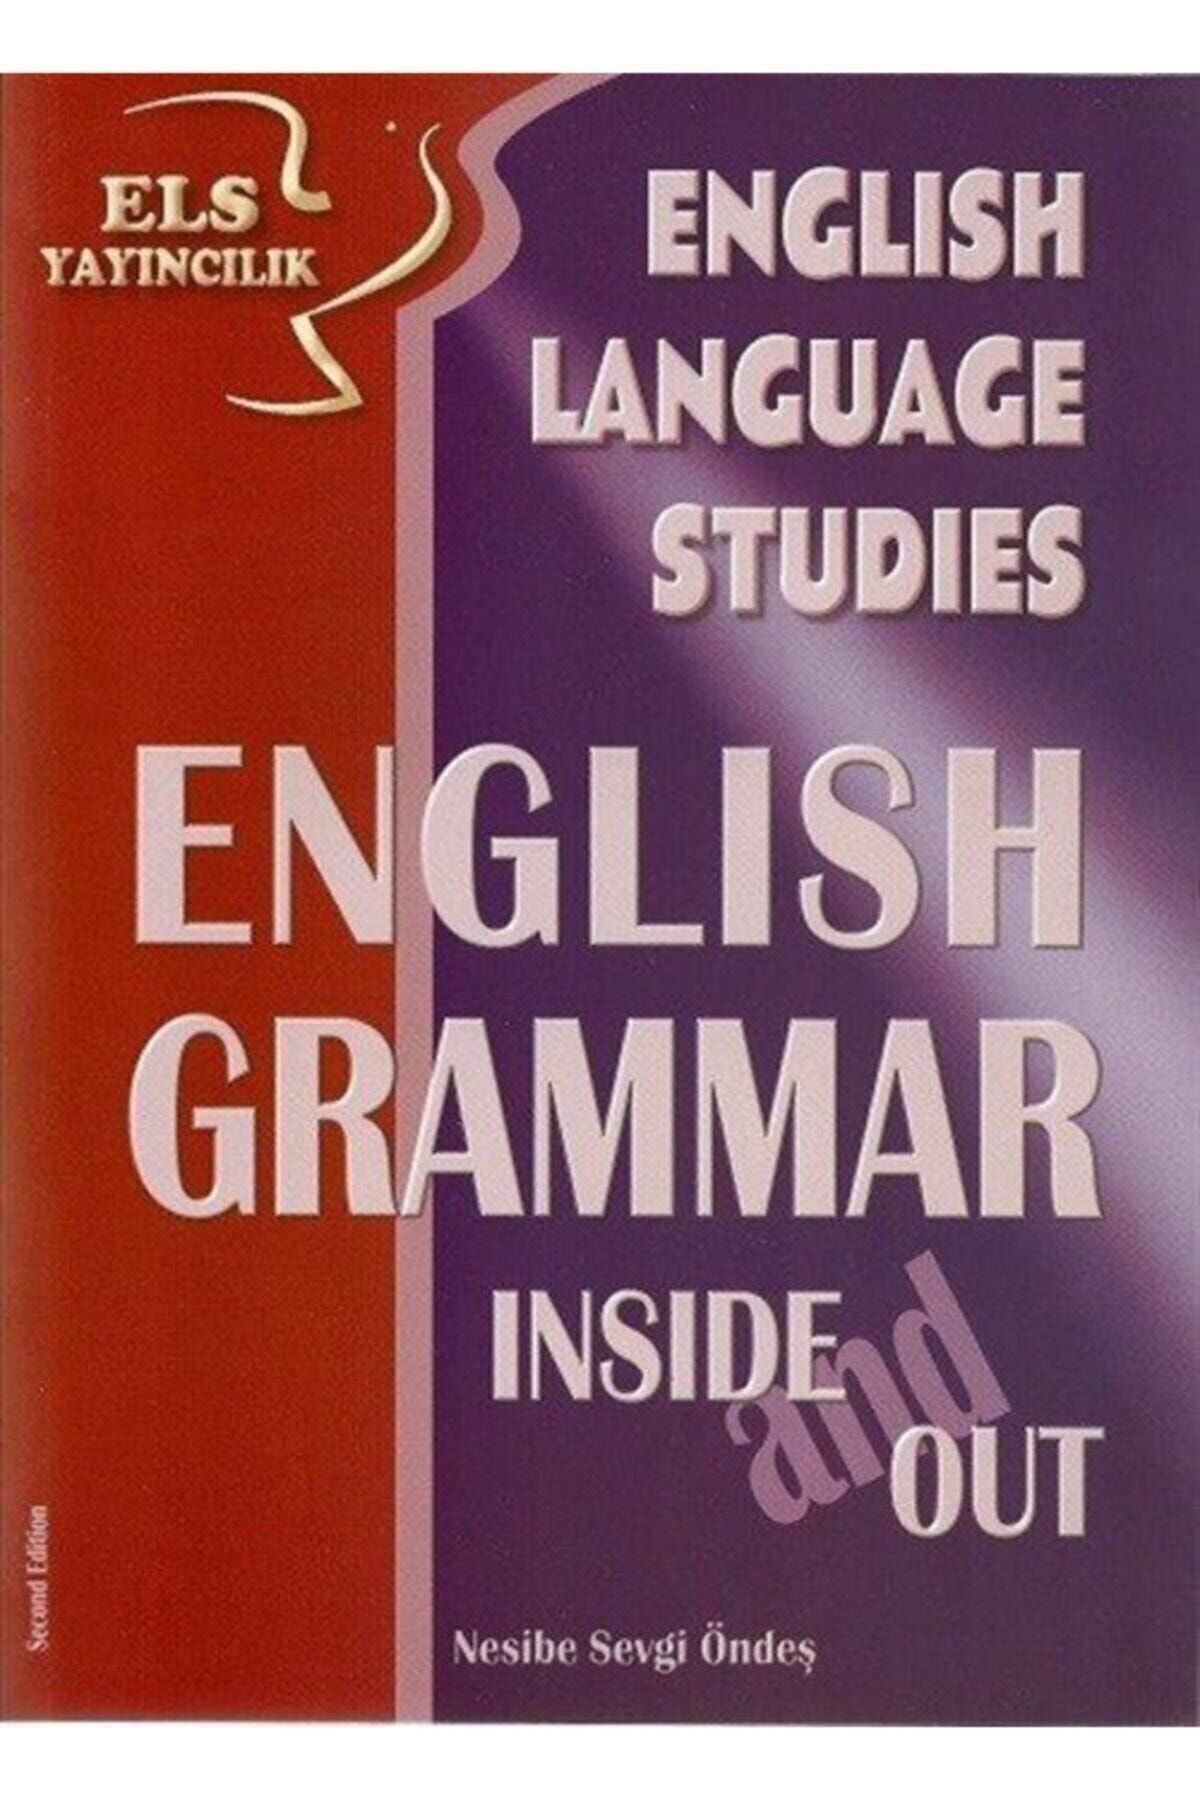 Els Yayıncılık Els English Language Studies English Grammar Inside And Out Nesibe Sevgi Öndeş